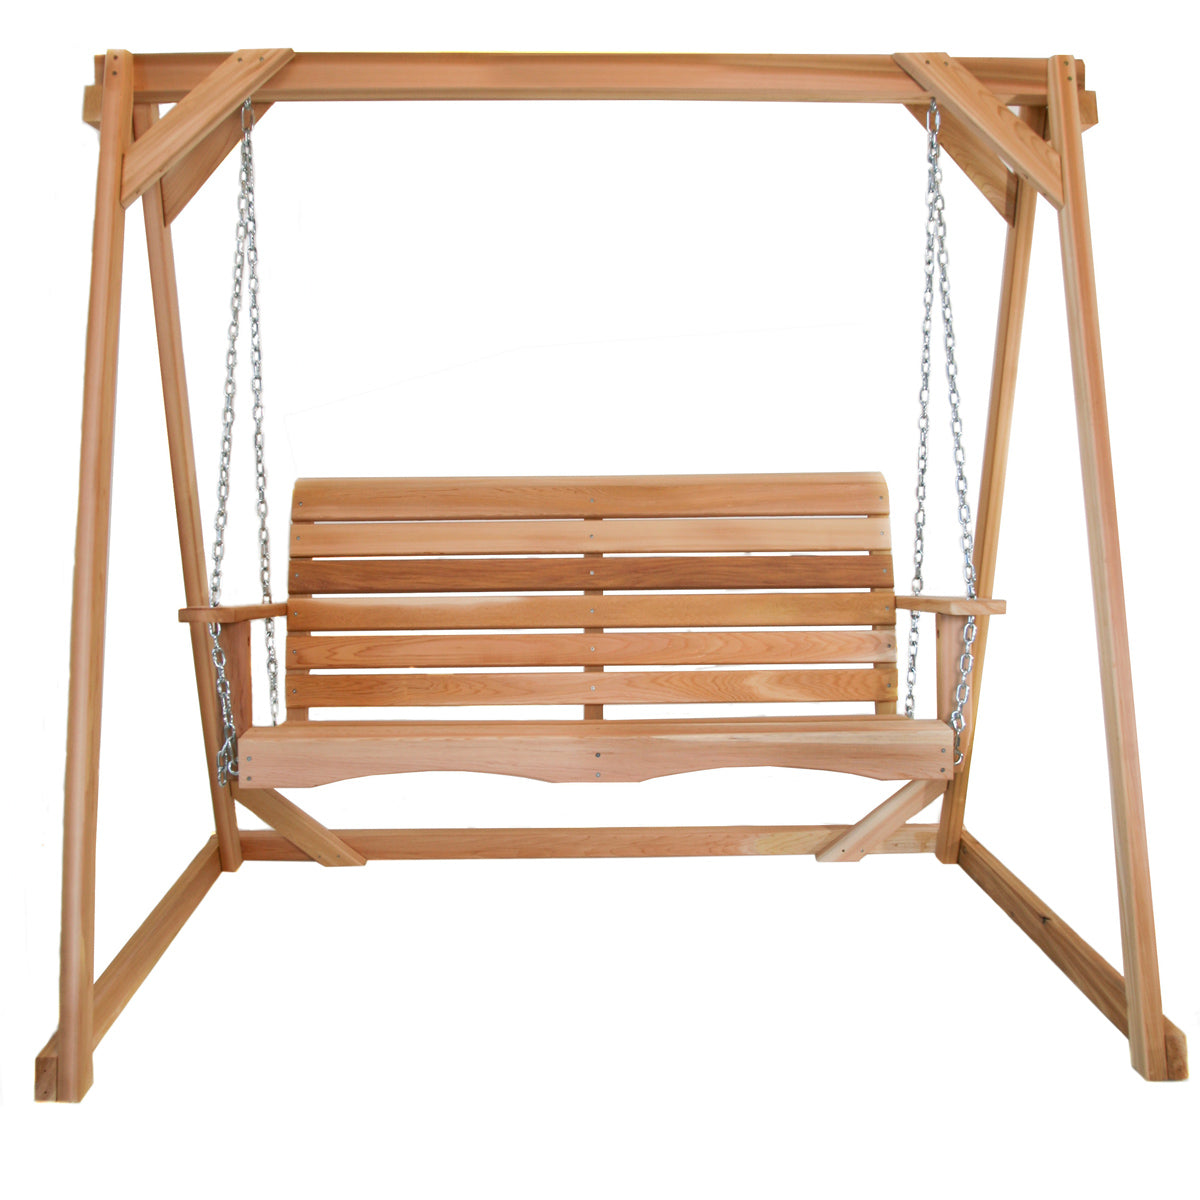 6' Cedar Swing Set